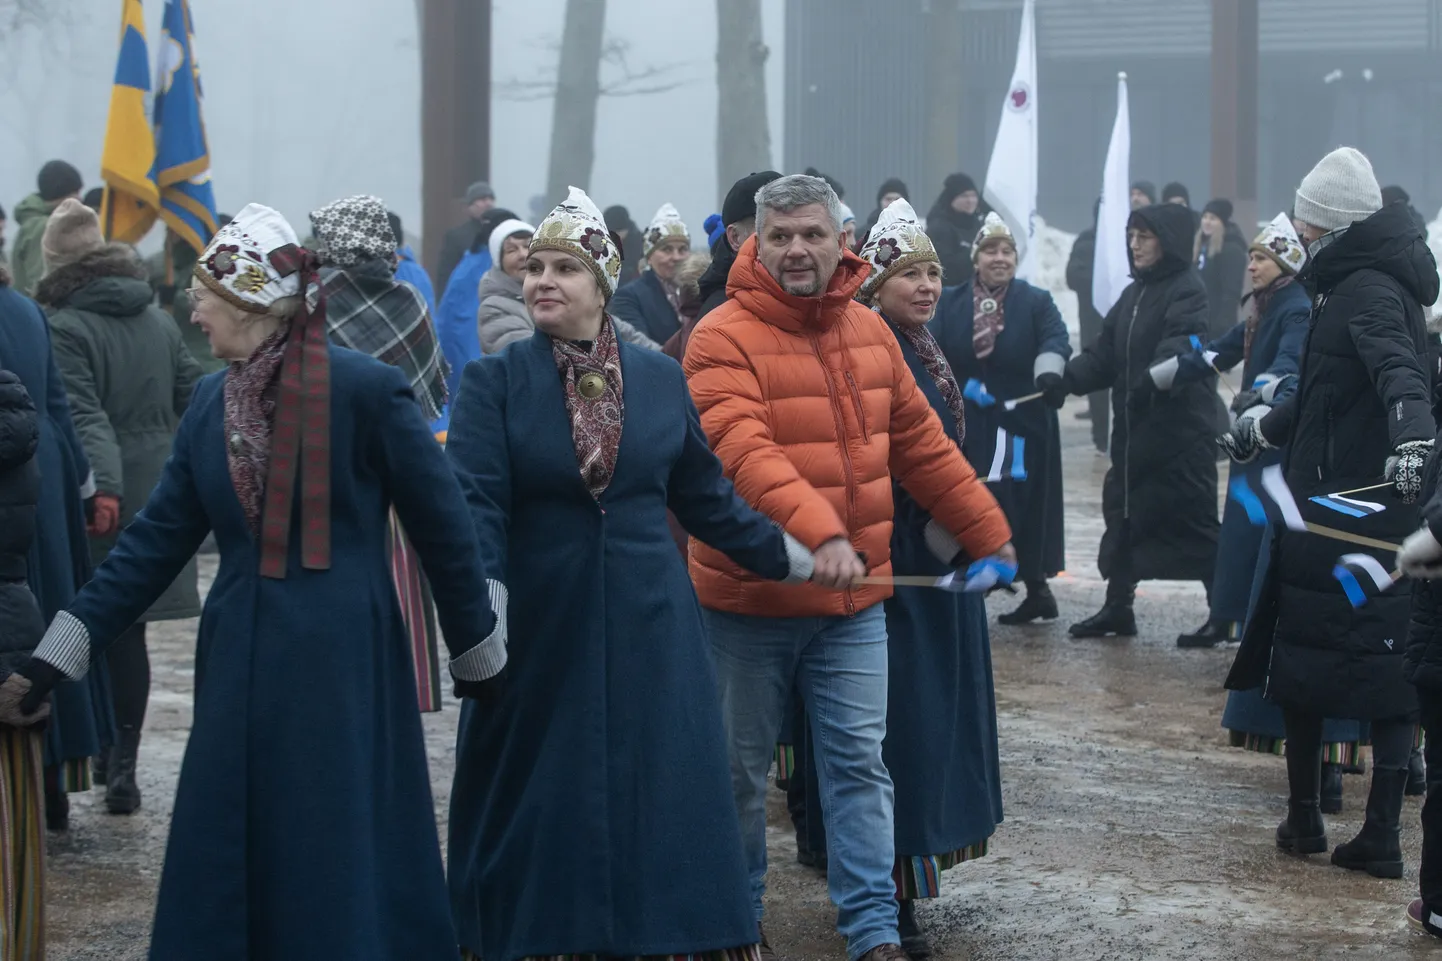 Pärast Eesti lipu heiskamist ja tervituskõnesid läks Jõhvi muusikaväljakul lahti ühistants eestlaste jaoks igihalja laulu "Kungla rahvas" saatel.